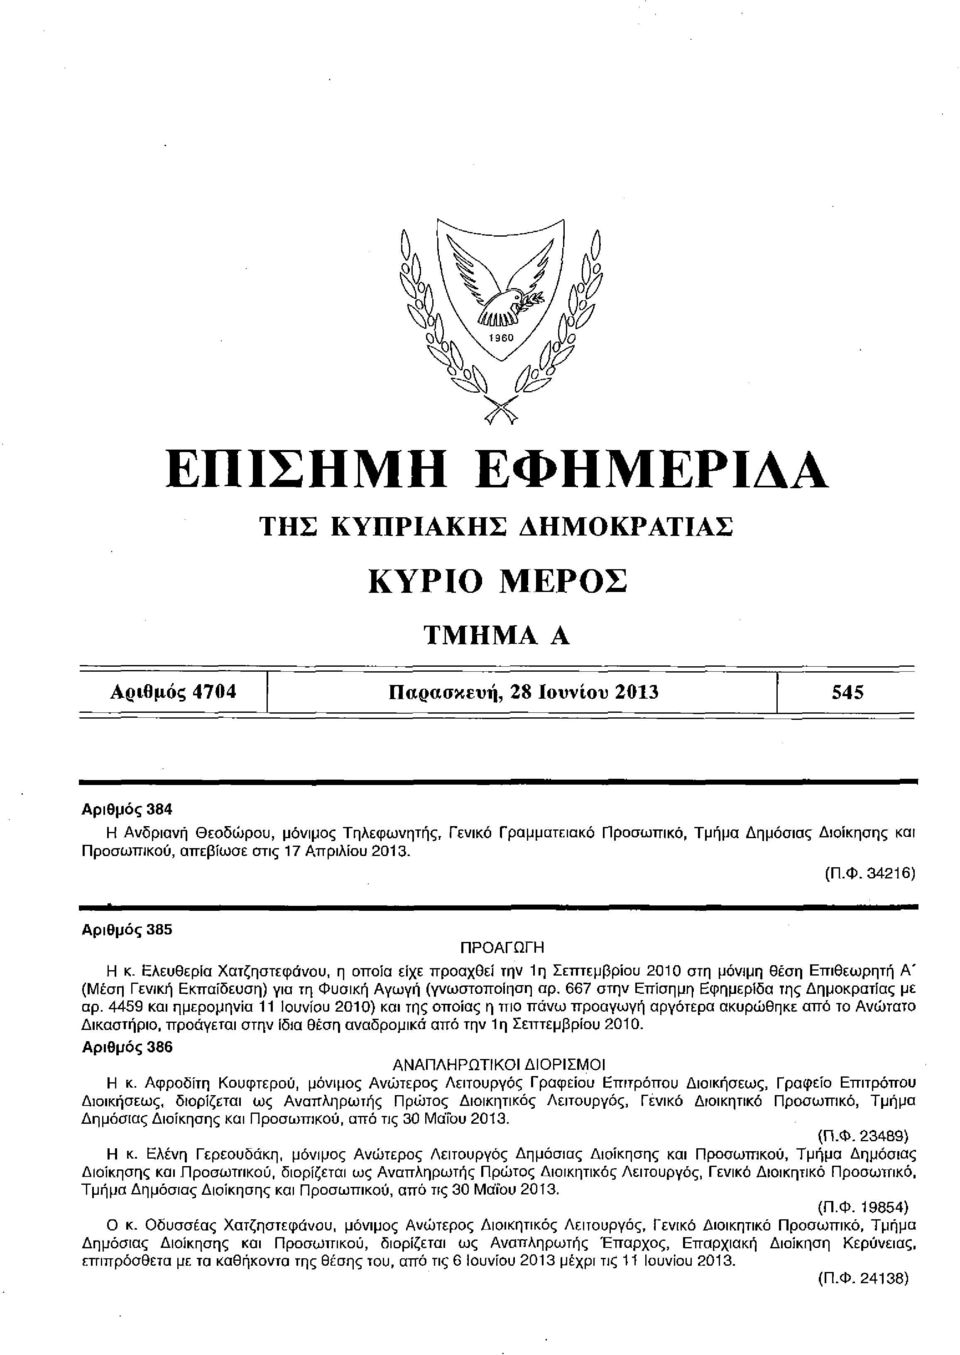 Ελευθερία Χατζηστεφάνου, η οποία είχε προαχθεί την 1η Σεπτεμβρίου 2010 στη μόνιμη θέση Επιθεωρητή Α' (Μέση Γενική Εκπαίδευση) για τη Φυσική Αγωγή (γνωστοποίηση αρ.